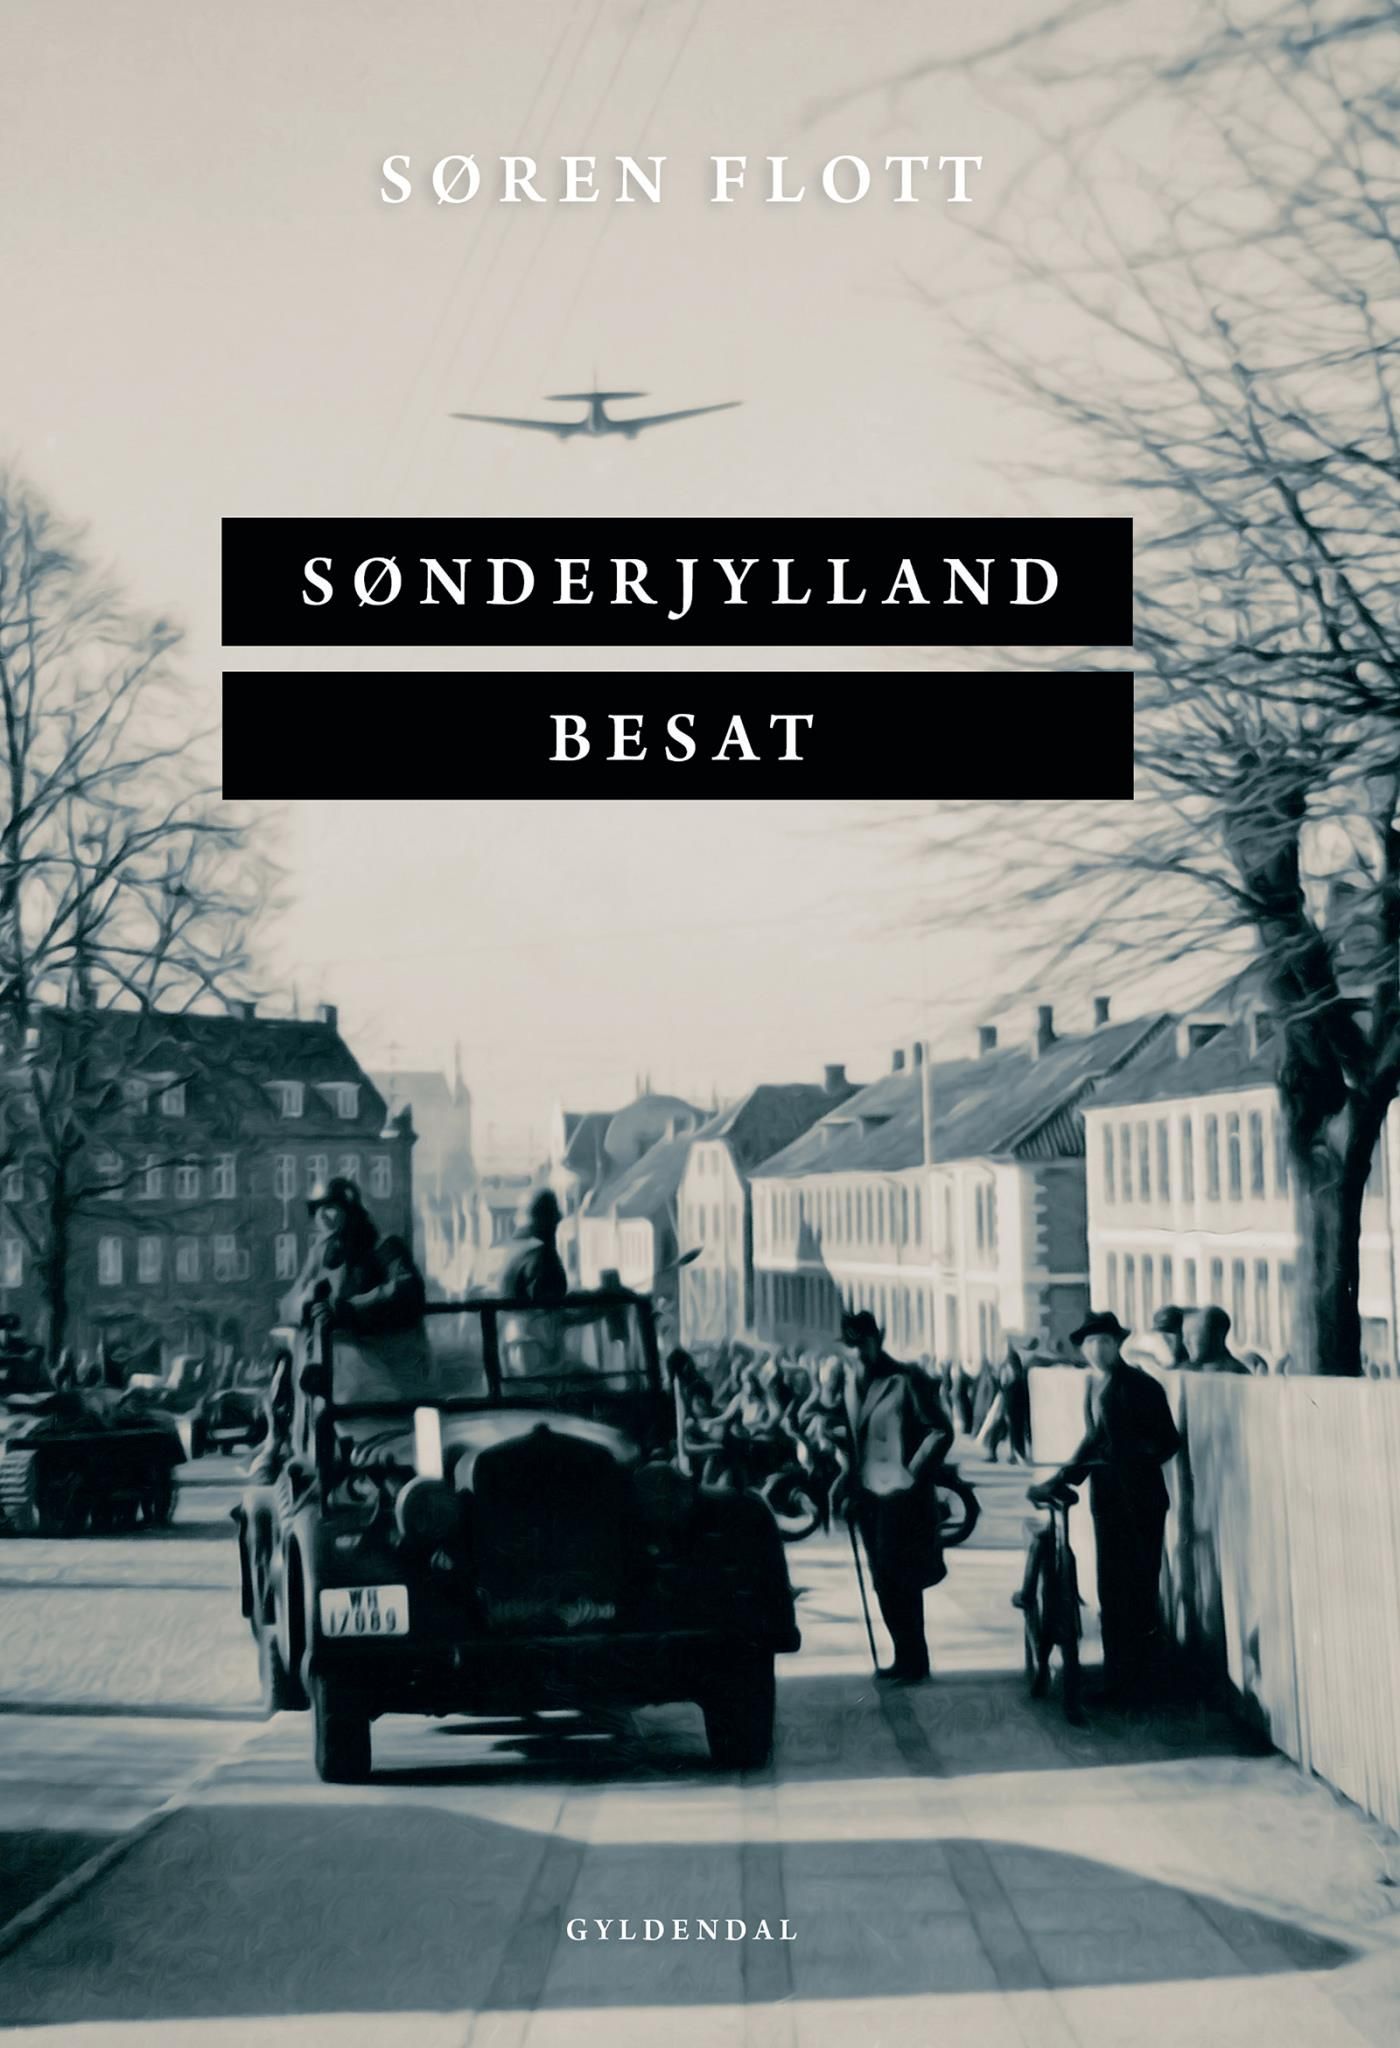 Sønderjylland besat, e-bok av Søren Flott